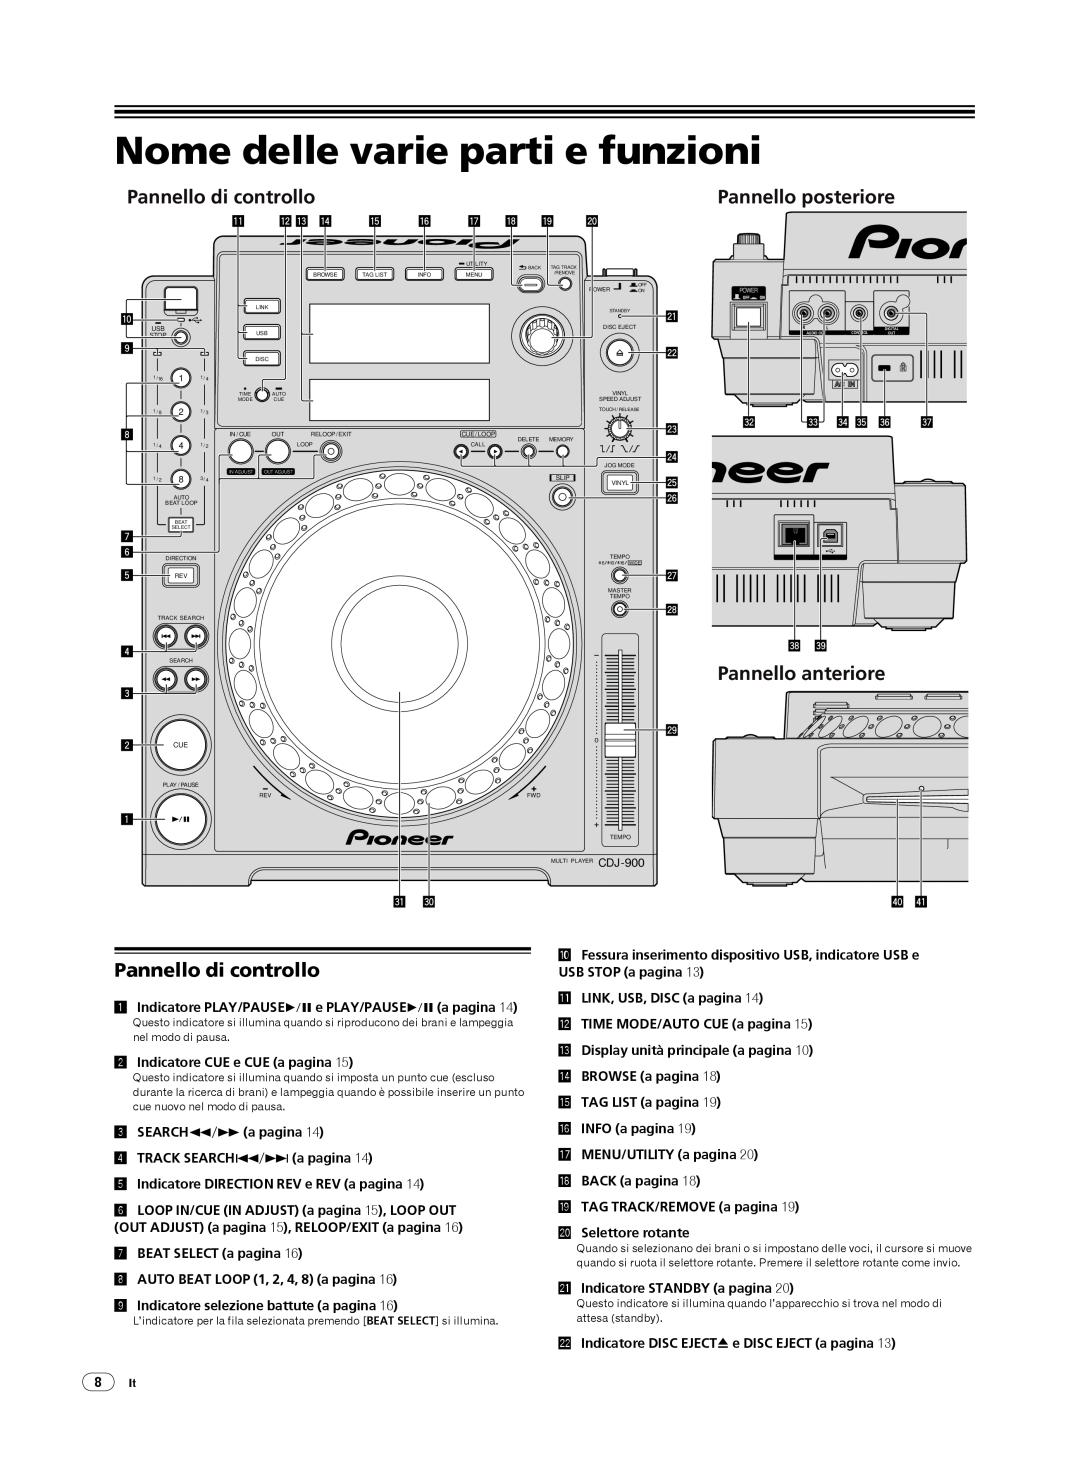 Pioneer CDJ-900 Nome delle varie parti e funzioni, Pannello di controllo, Pannello anteriore, Pannello posteriore 